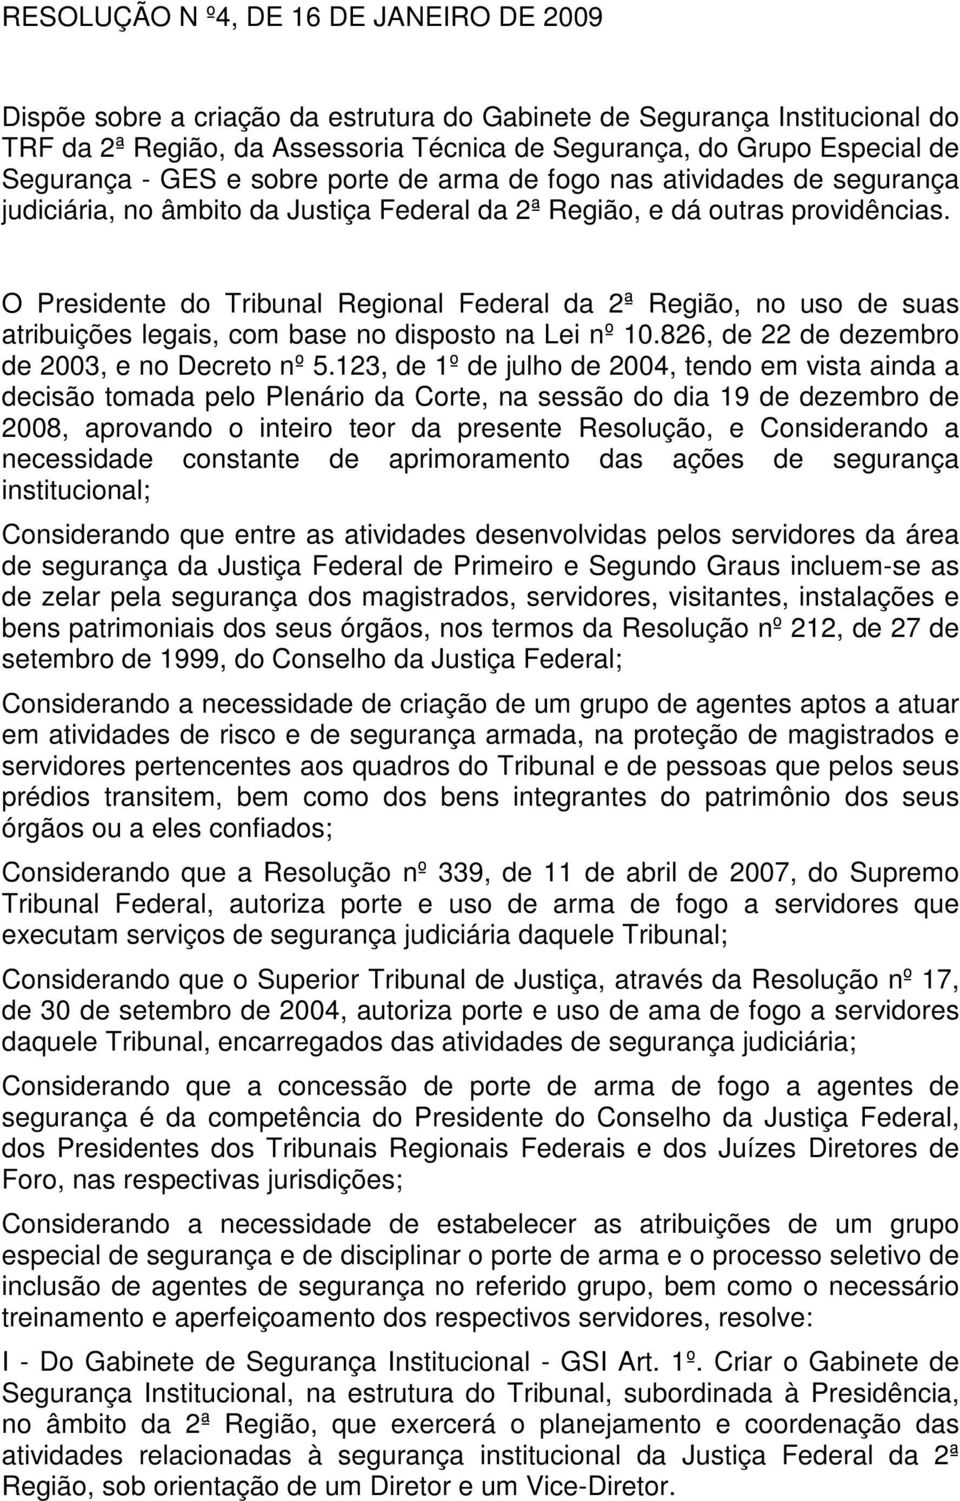 O Presidente do Tribunal Regional Federal da 2ª Região, no uso de suas atribuições legais, com base no disposto na Lei nº 10.826, de 22 de dezembro de 2003, e no Decreto nº 5.